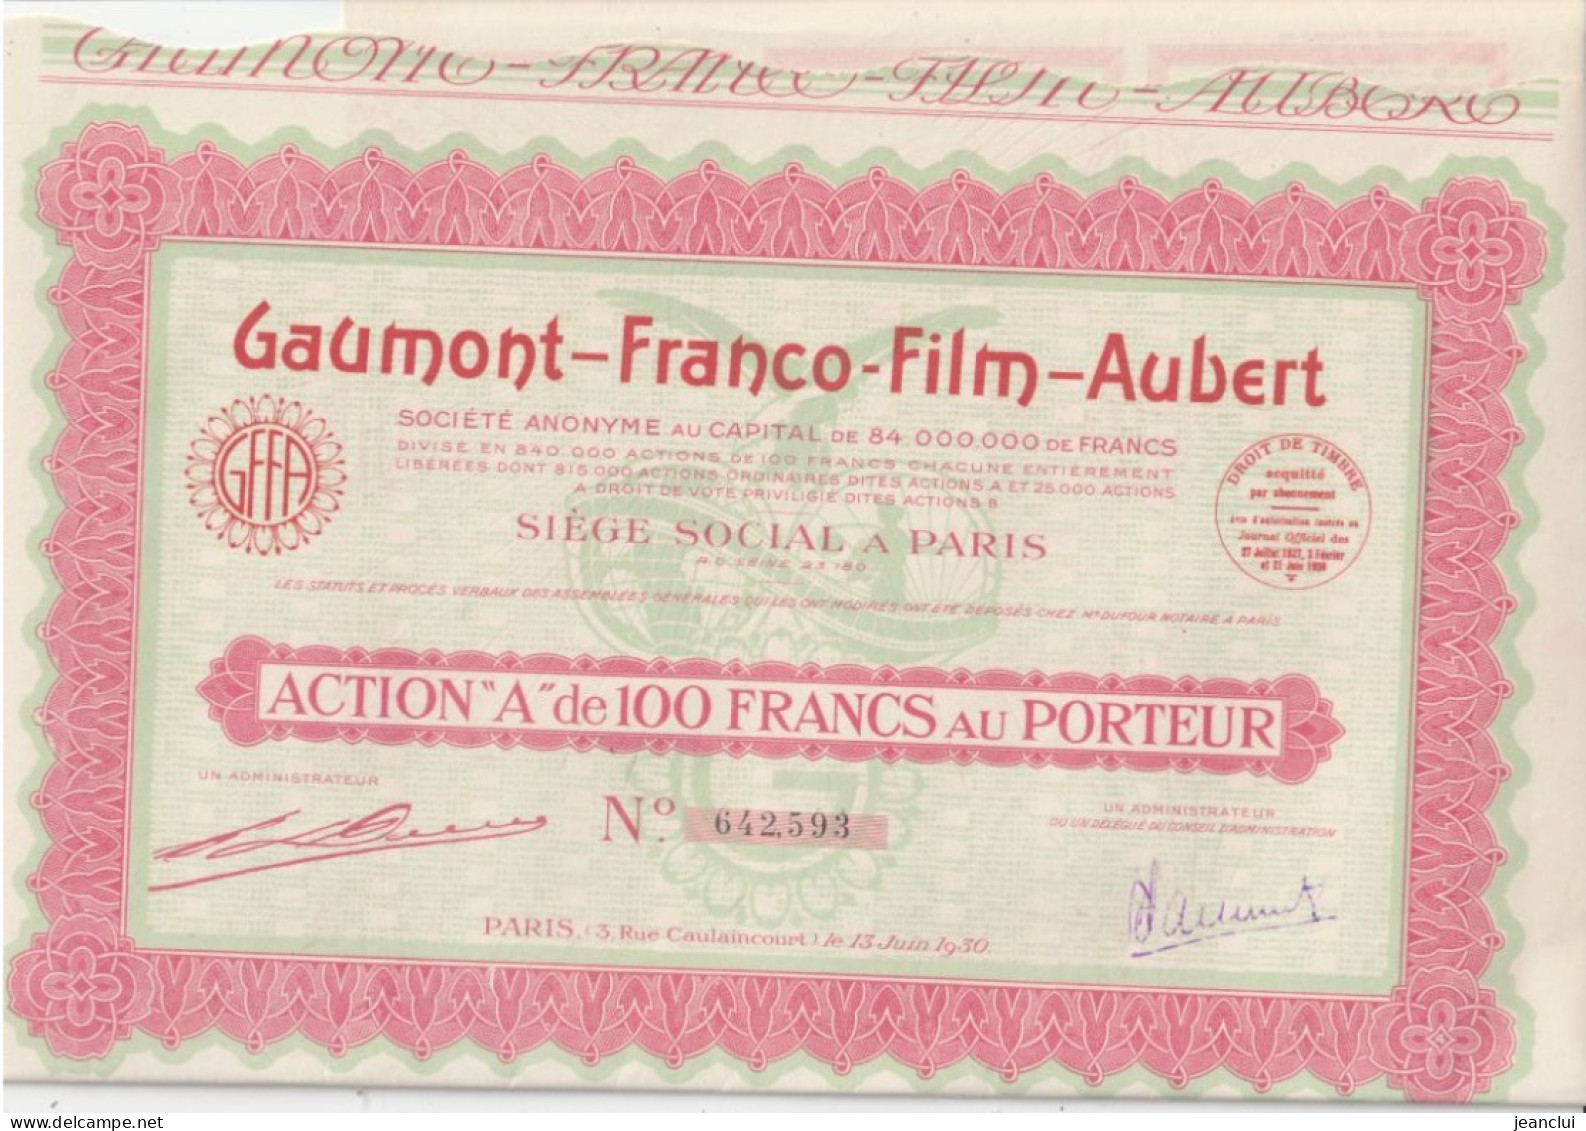 GAUMONT - FRANCO - FILM - AUBERT  . ACTION " A " De 100 FRANCS AU PORTEUR  N° 642.593 - Cinéma & Theatre